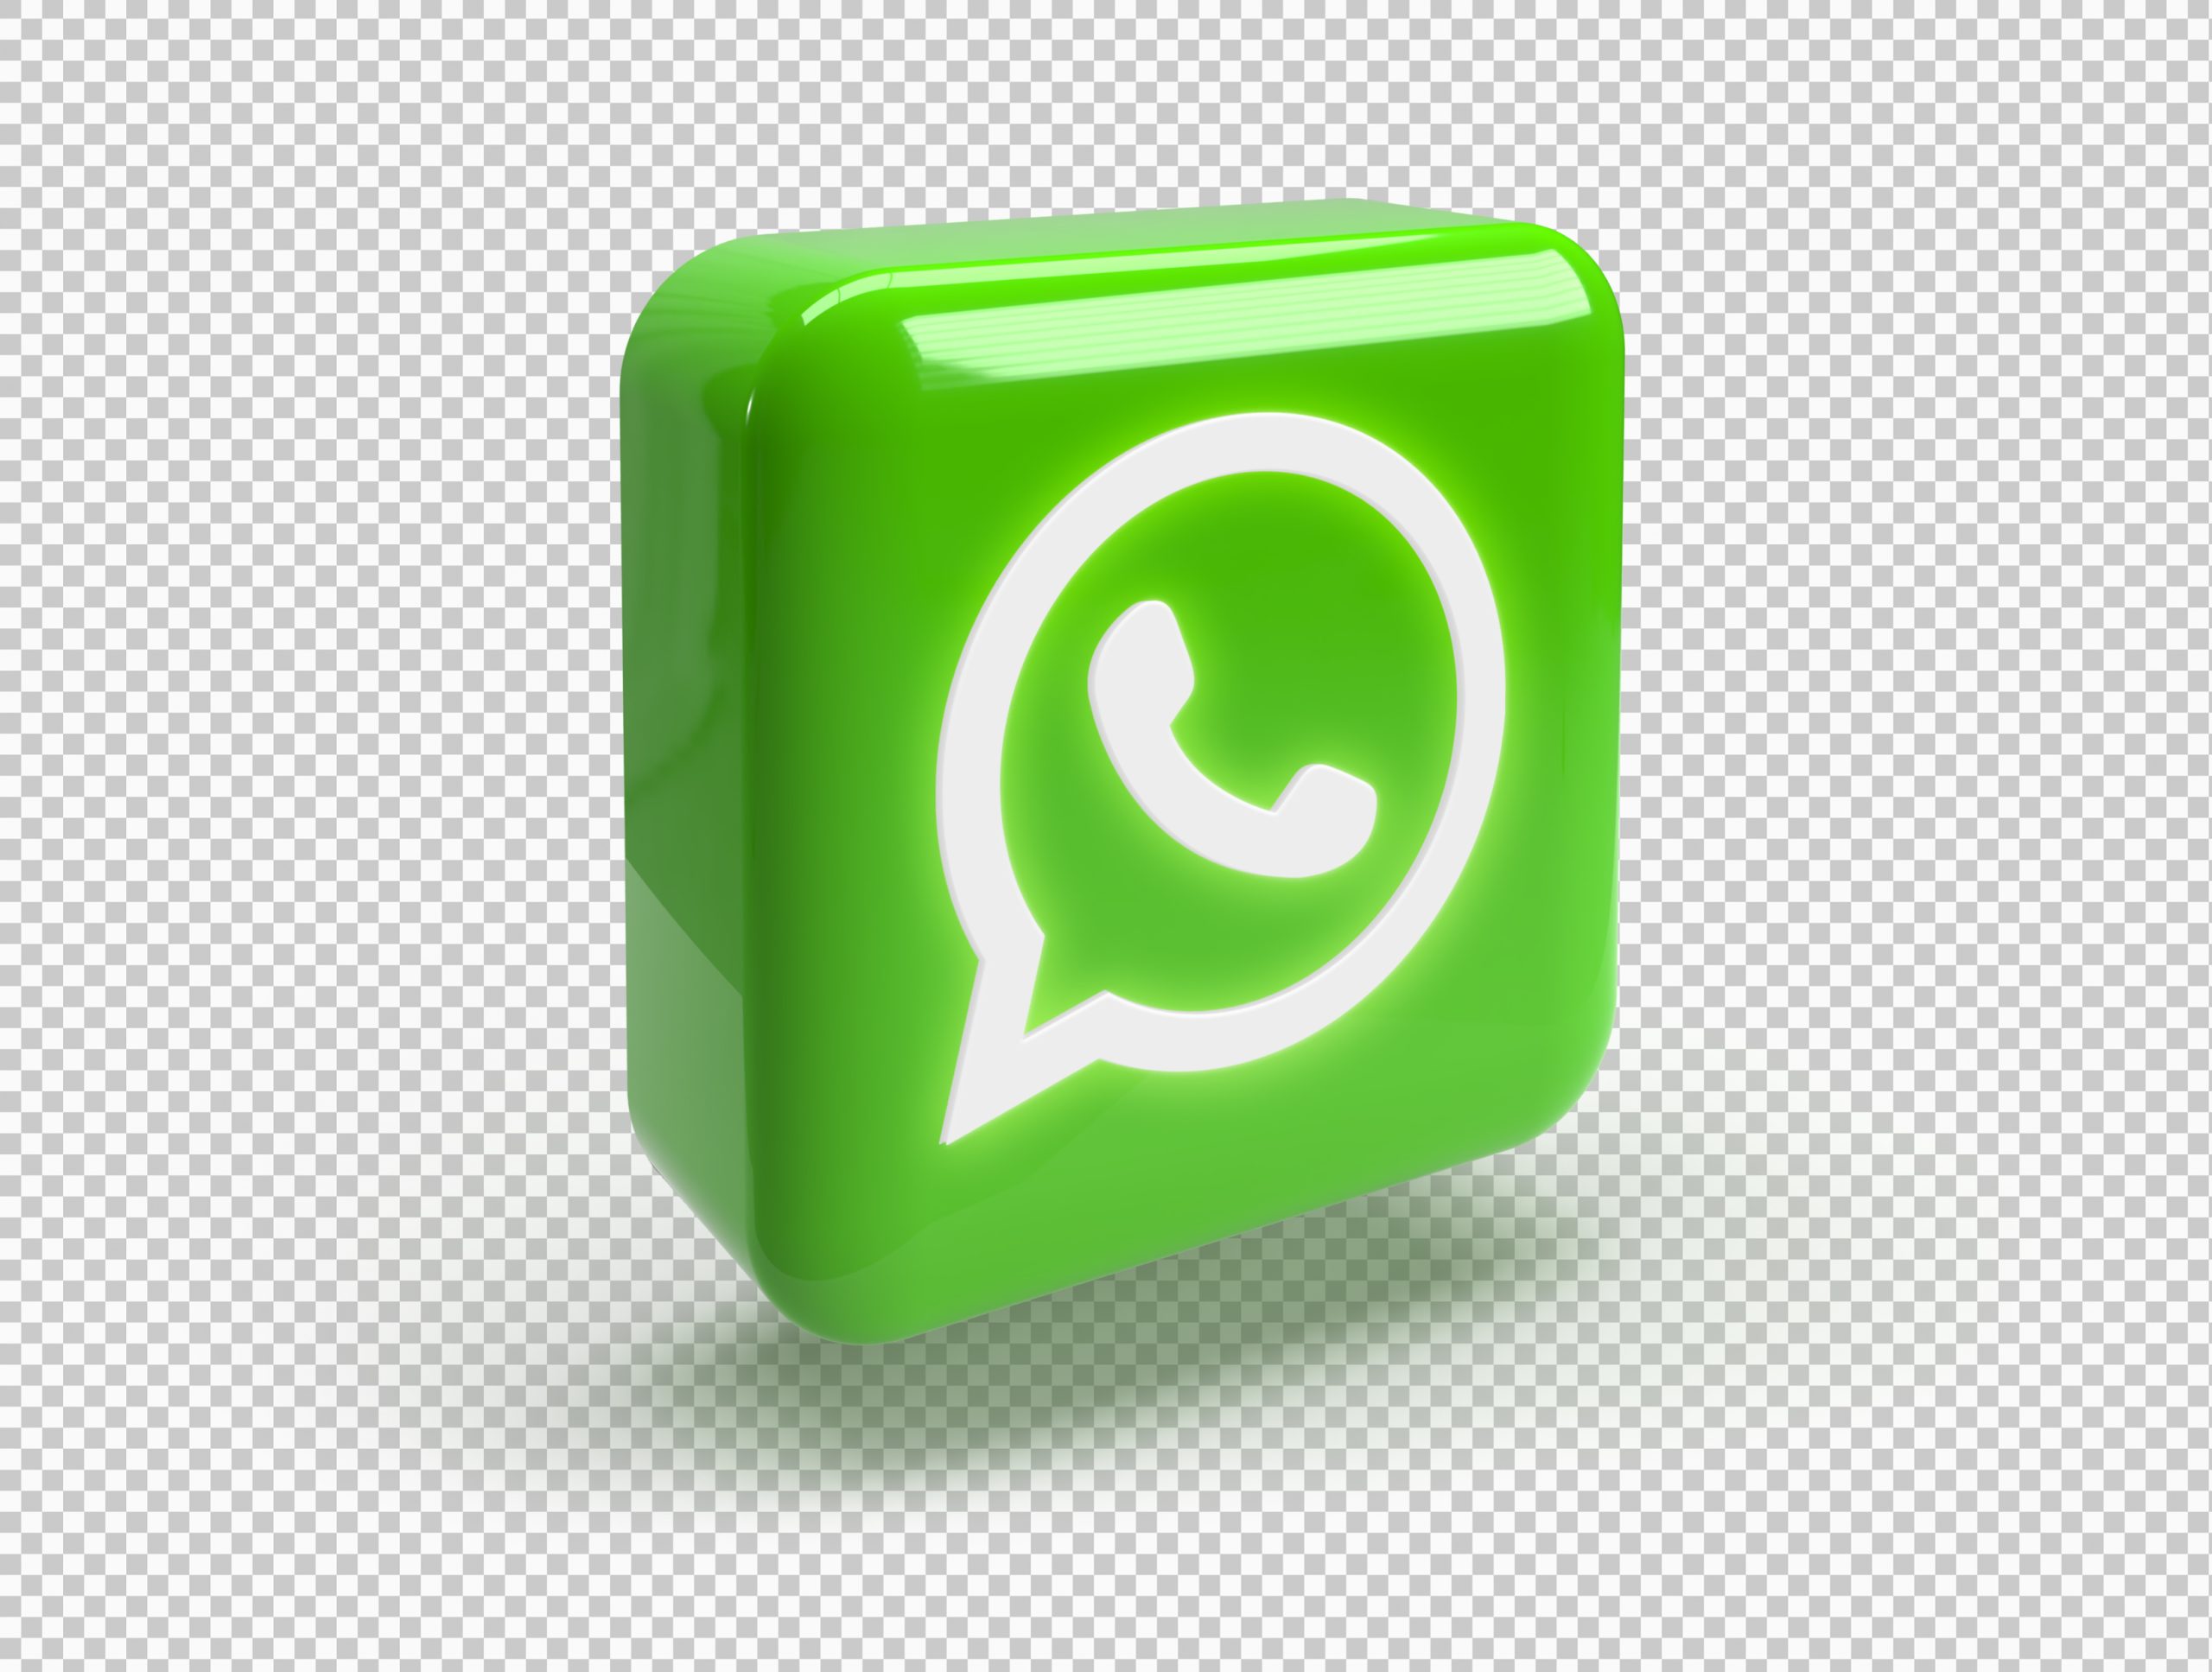 usar whatsapp